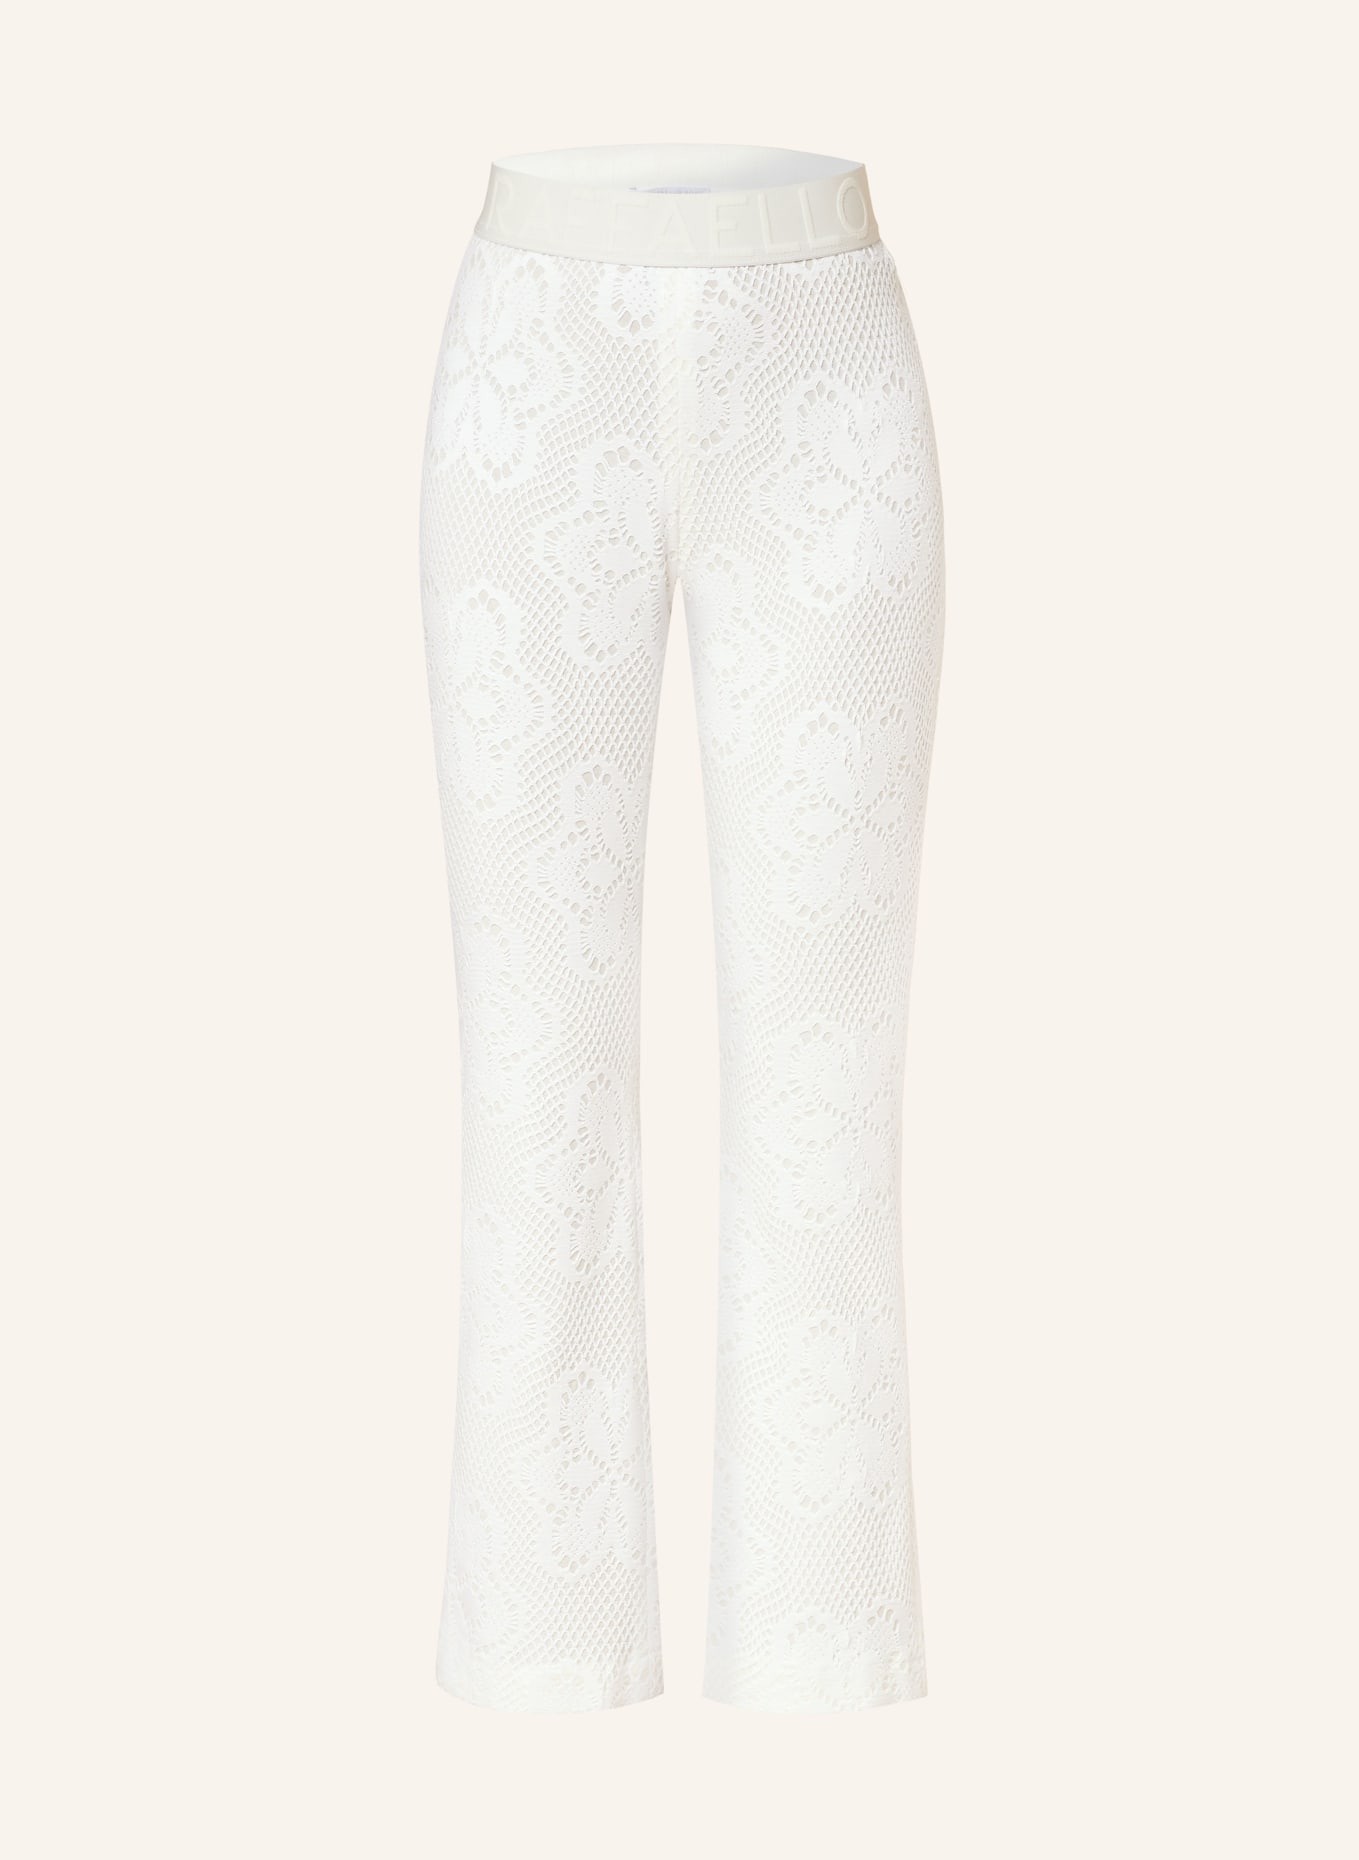 RAFFAELLO ROSSI 7/8 knit trousers MACY, Color: WHITE (Image 1)